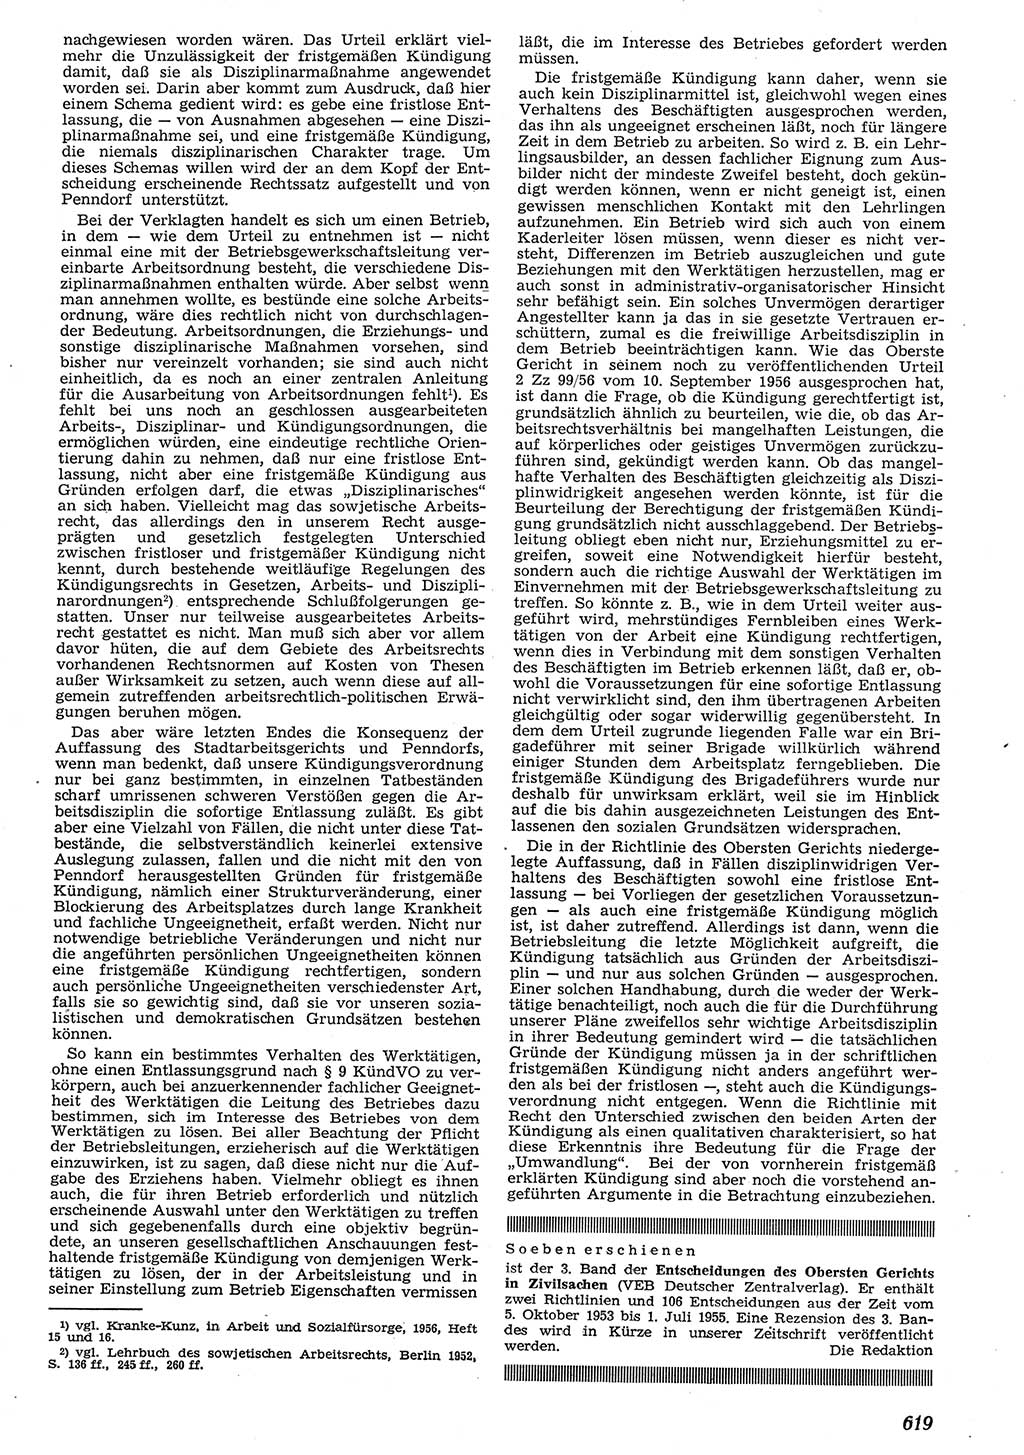 Neue Justiz (NJ), Zeitschrift für Recht und Rechtswissenschaft [Deutsche Demokratische Republik (DDR)], 10. Jahrgang 1956, Seite 619 (NJ DDR 1956, S. 619)